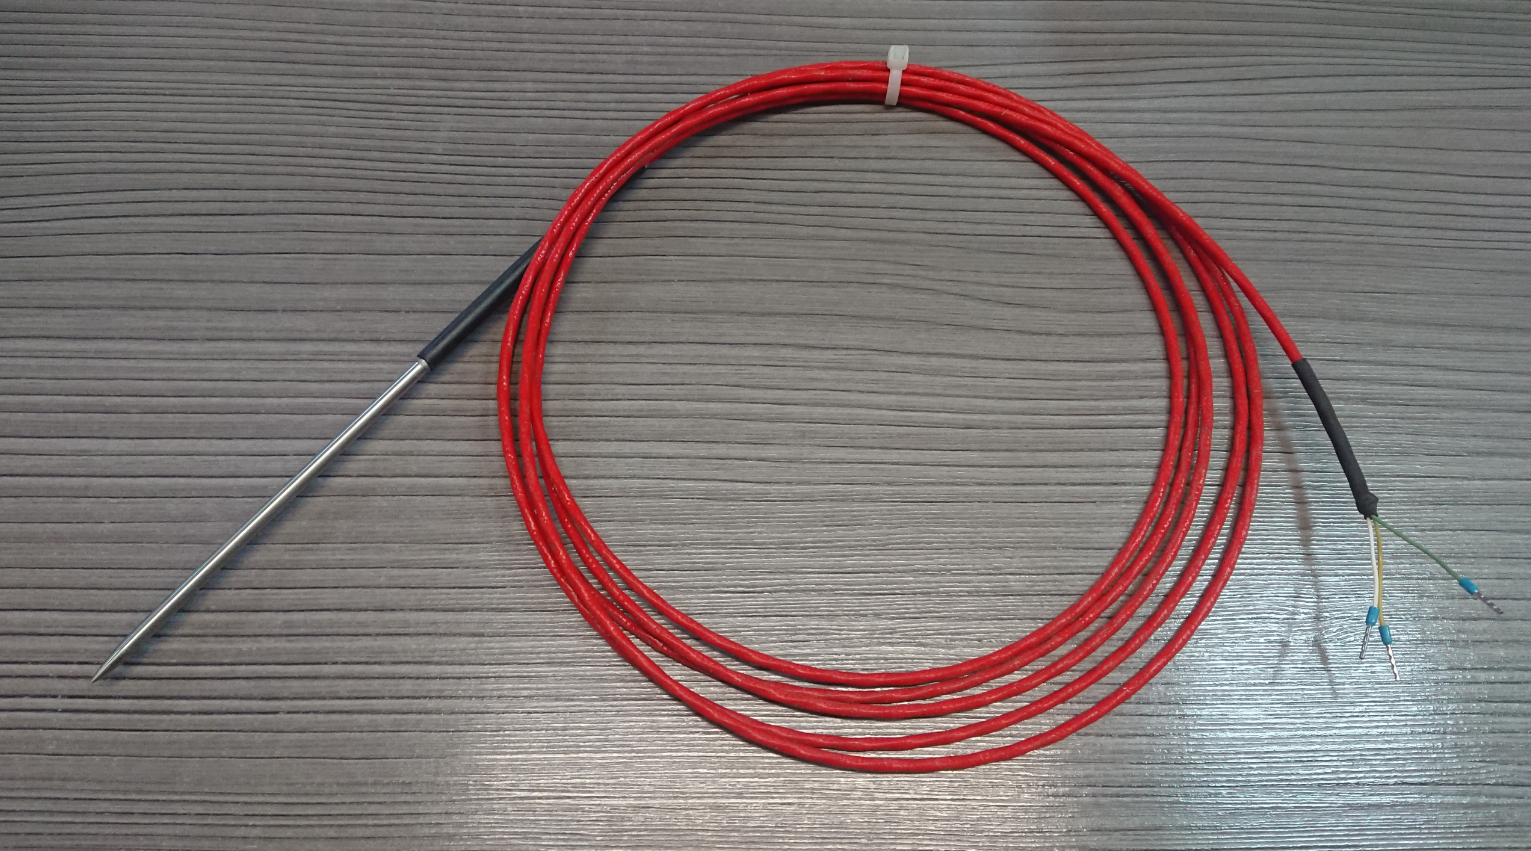 Датчик контроля температуры Pt-100 кабель трехконтактный длина 3 метра, аналог, КФТЕХНО (Россия)